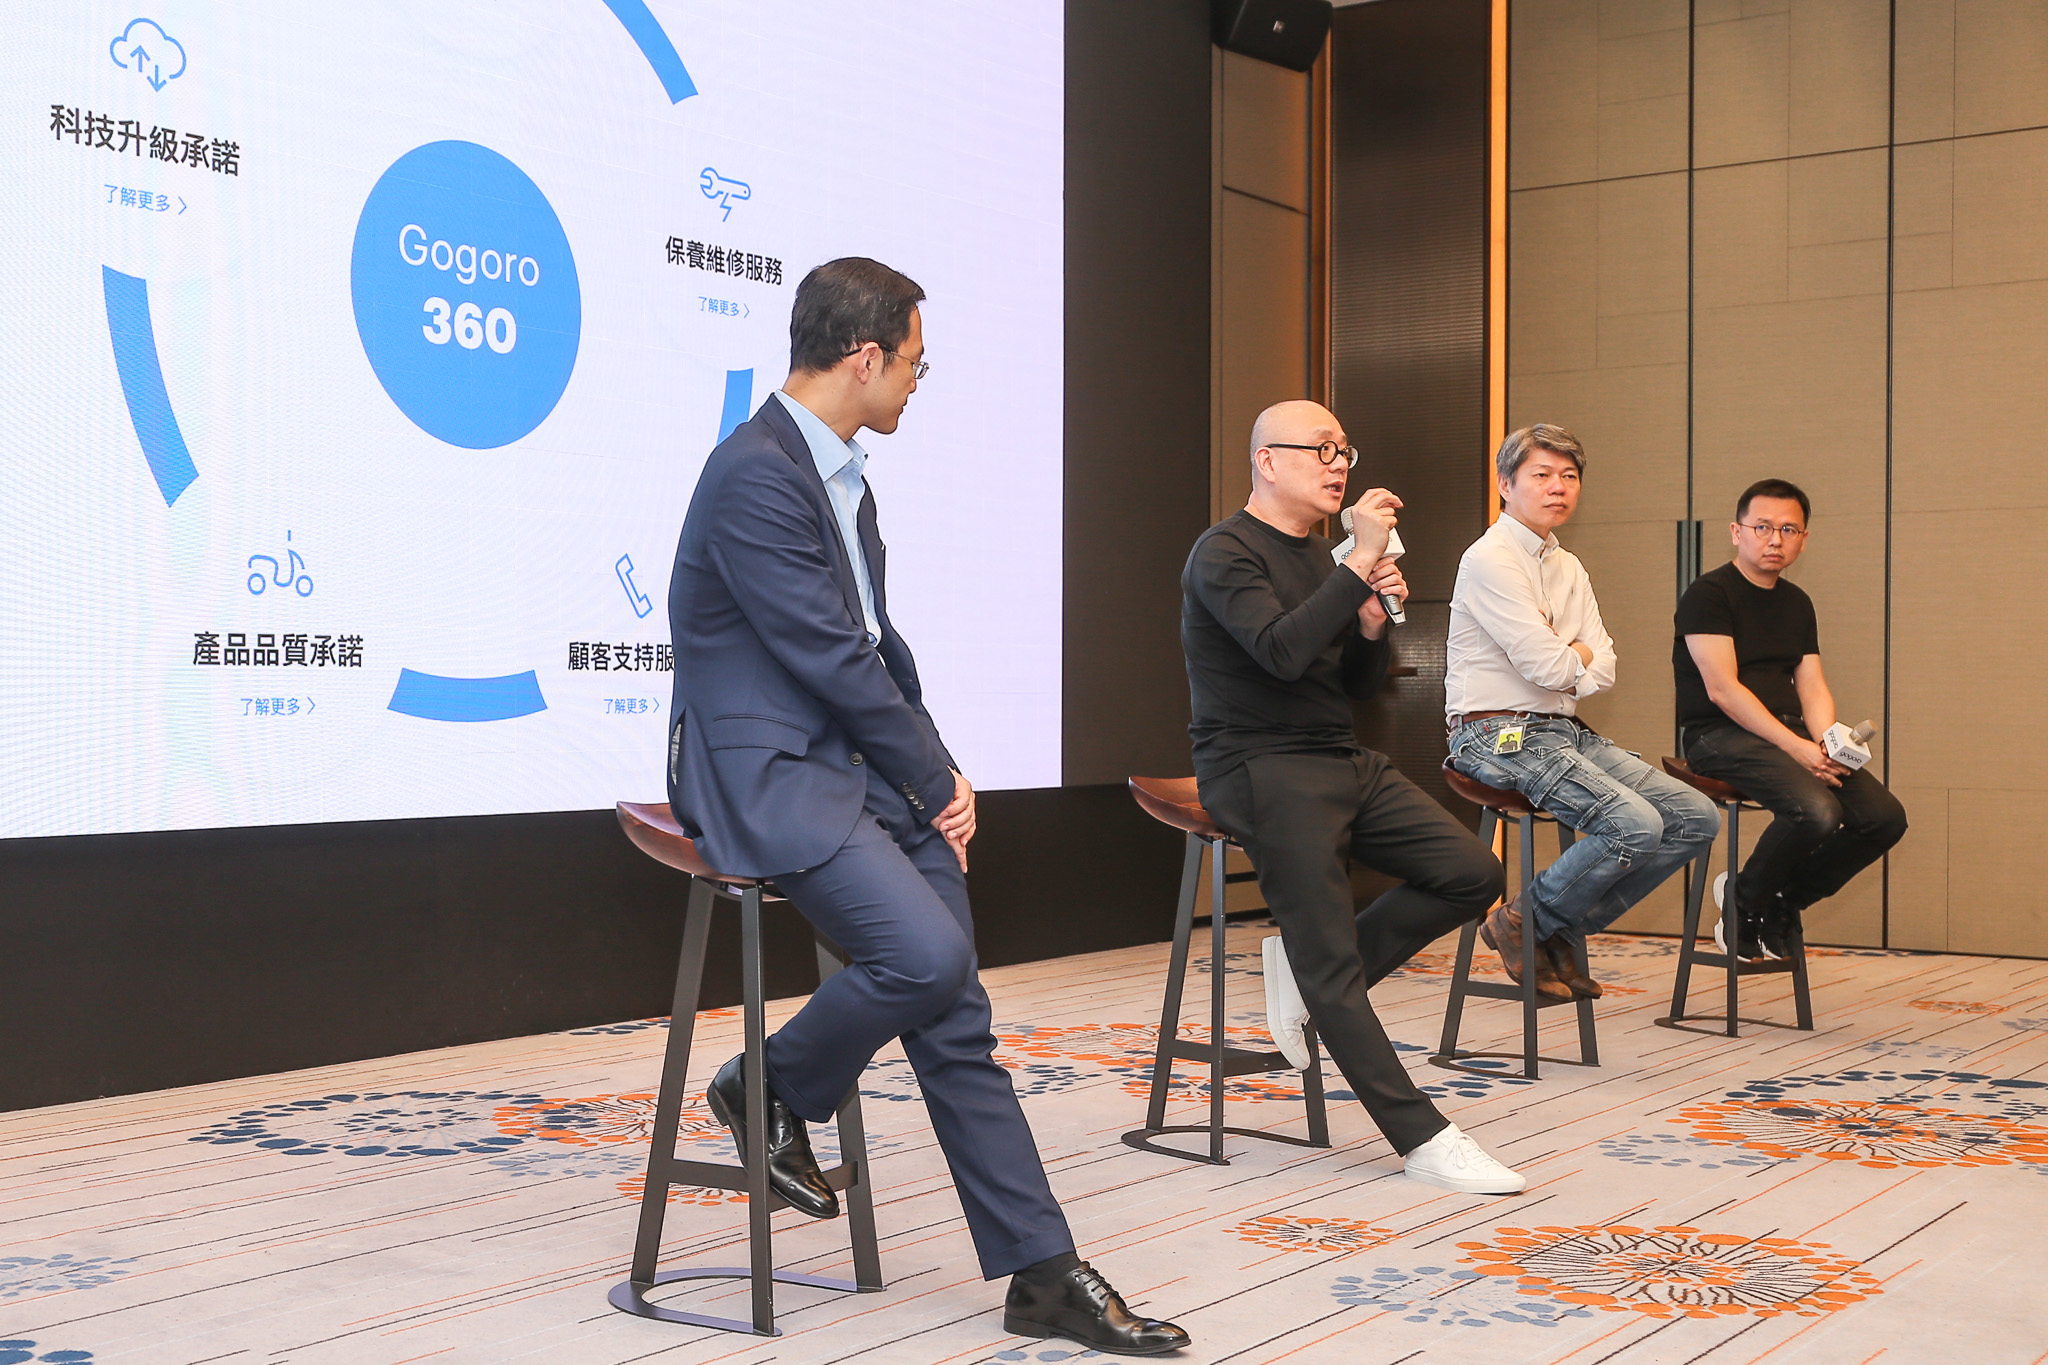 5 月26 日的記者會中，(由左至右) Network 總經理潘璟倫、Gogoro 創辦人暨執行長陸學森、商務長程宗楷、產品長彭明義一字排開針對 Gogoro 360 內容與重點加以解釋。